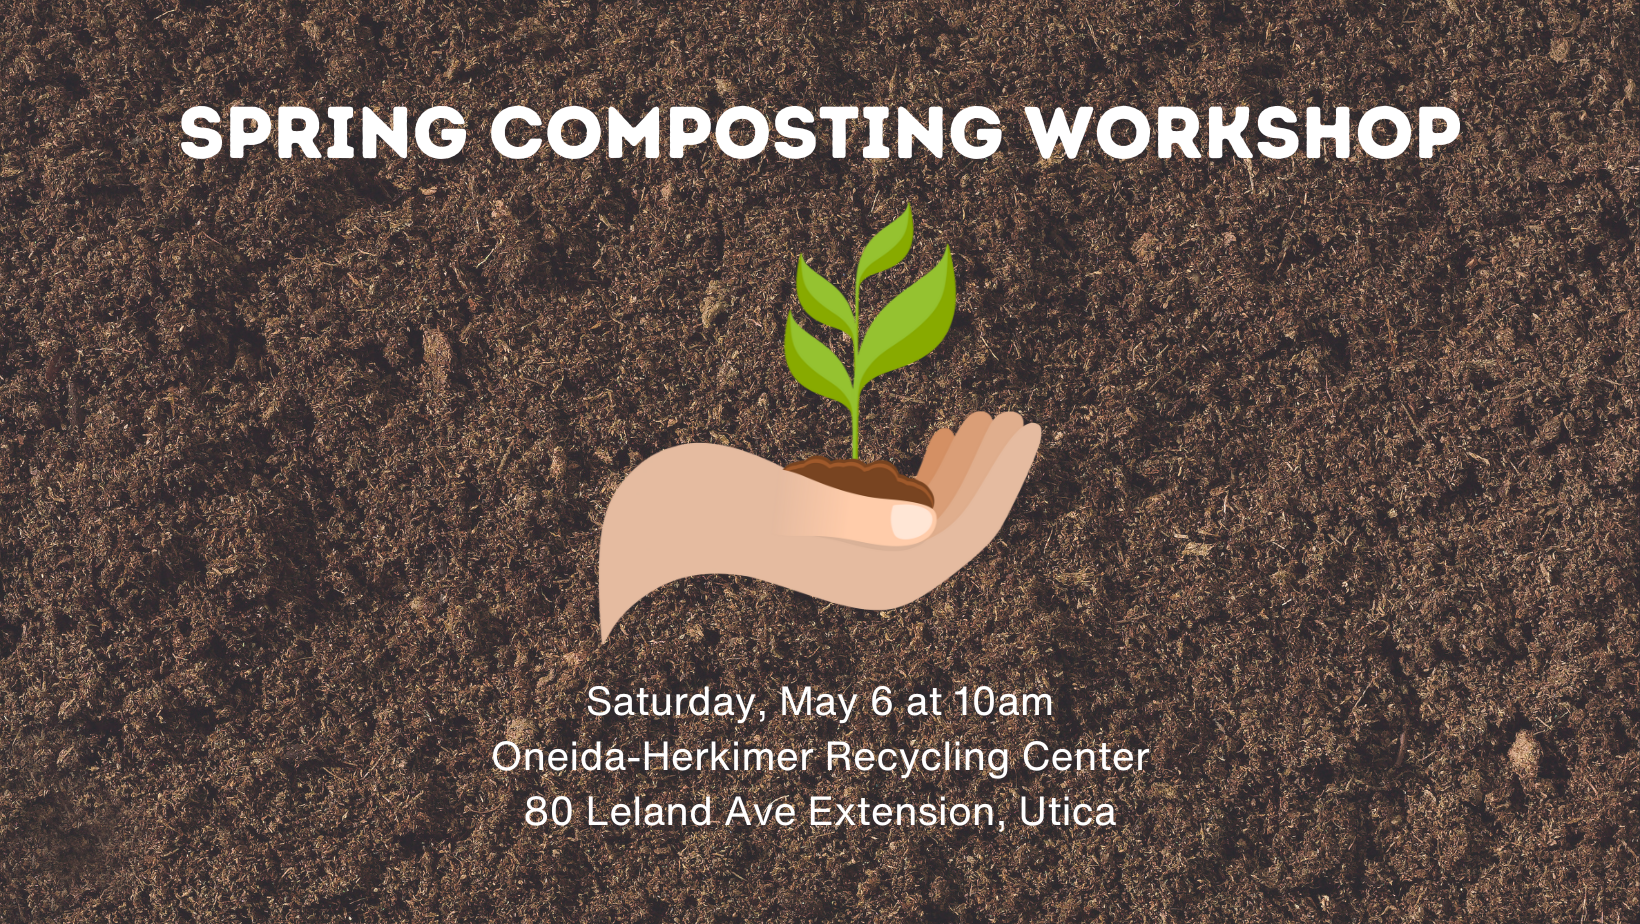 Composting Workshop News